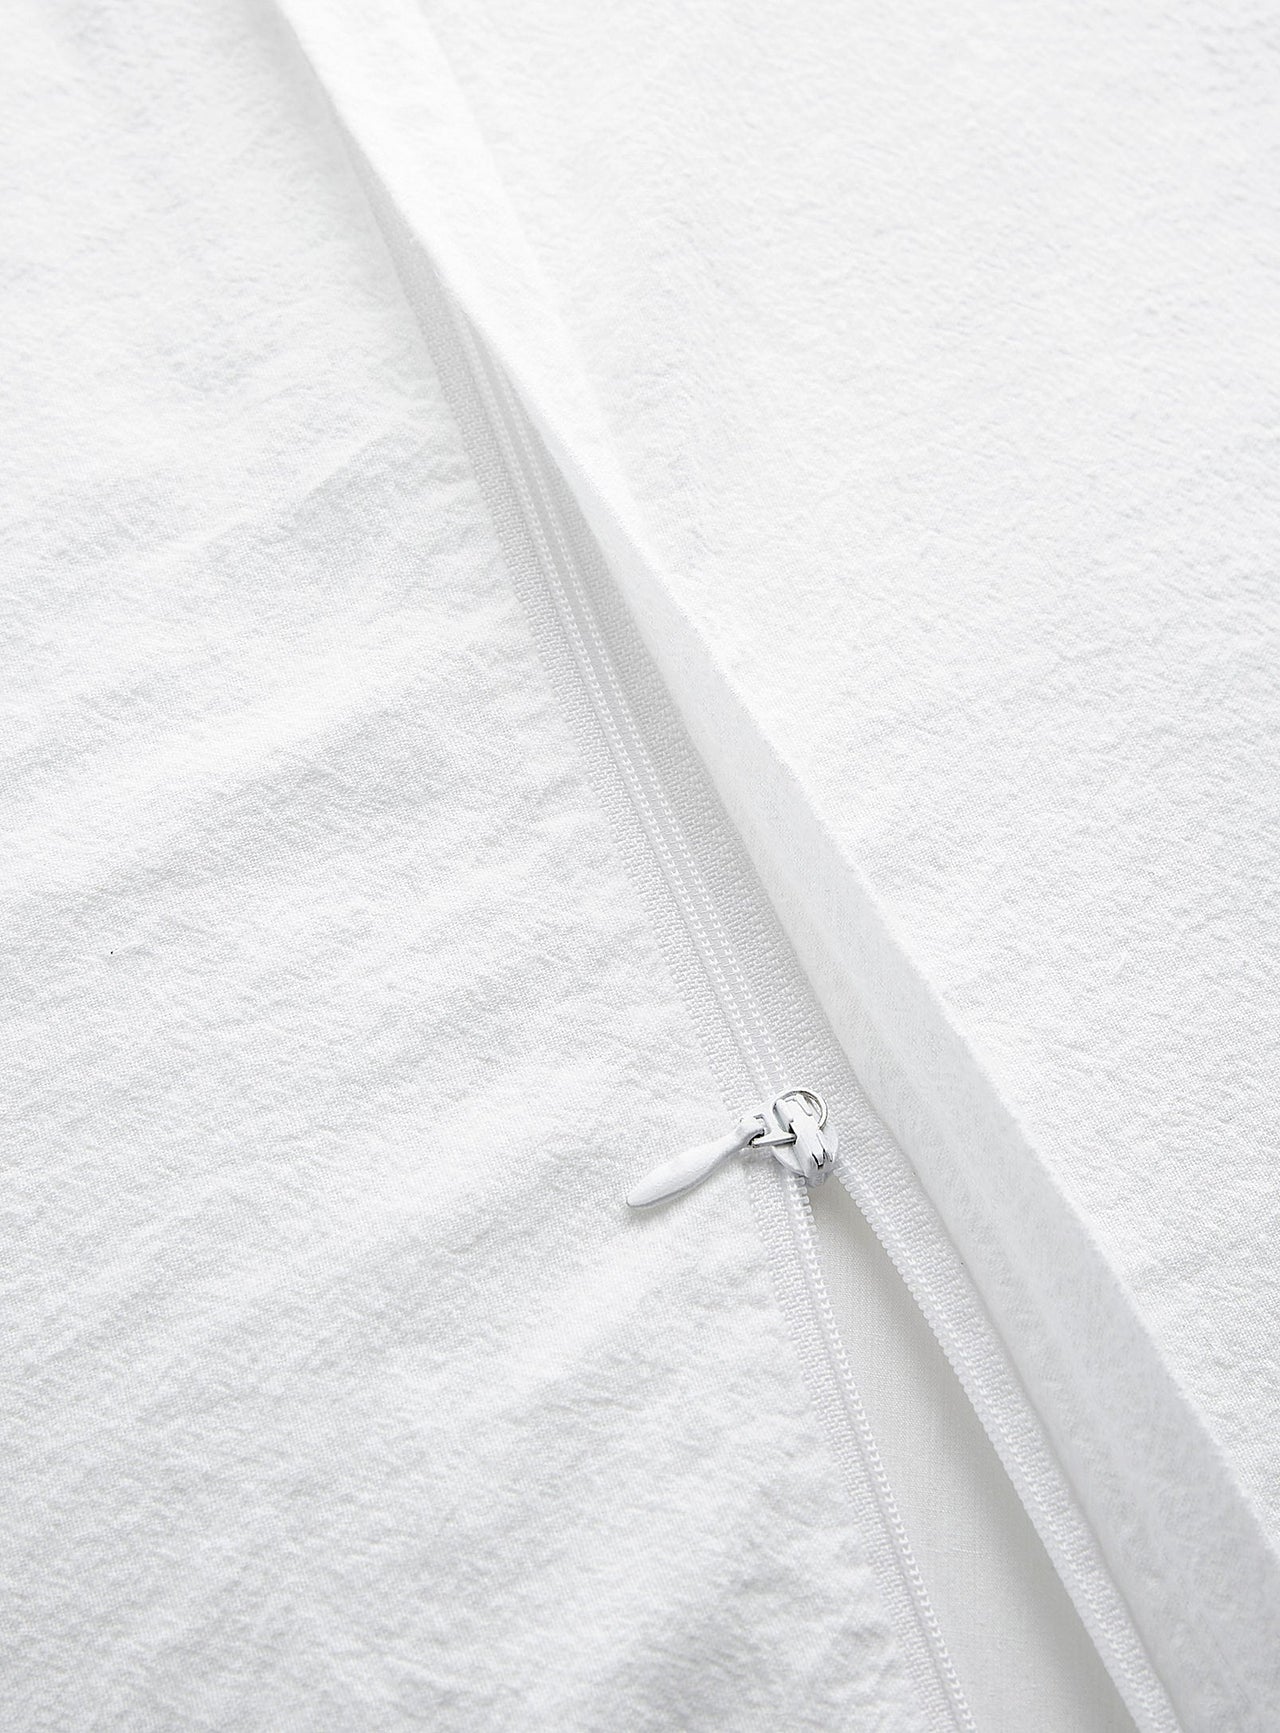 Linen and cotton duvet cover set